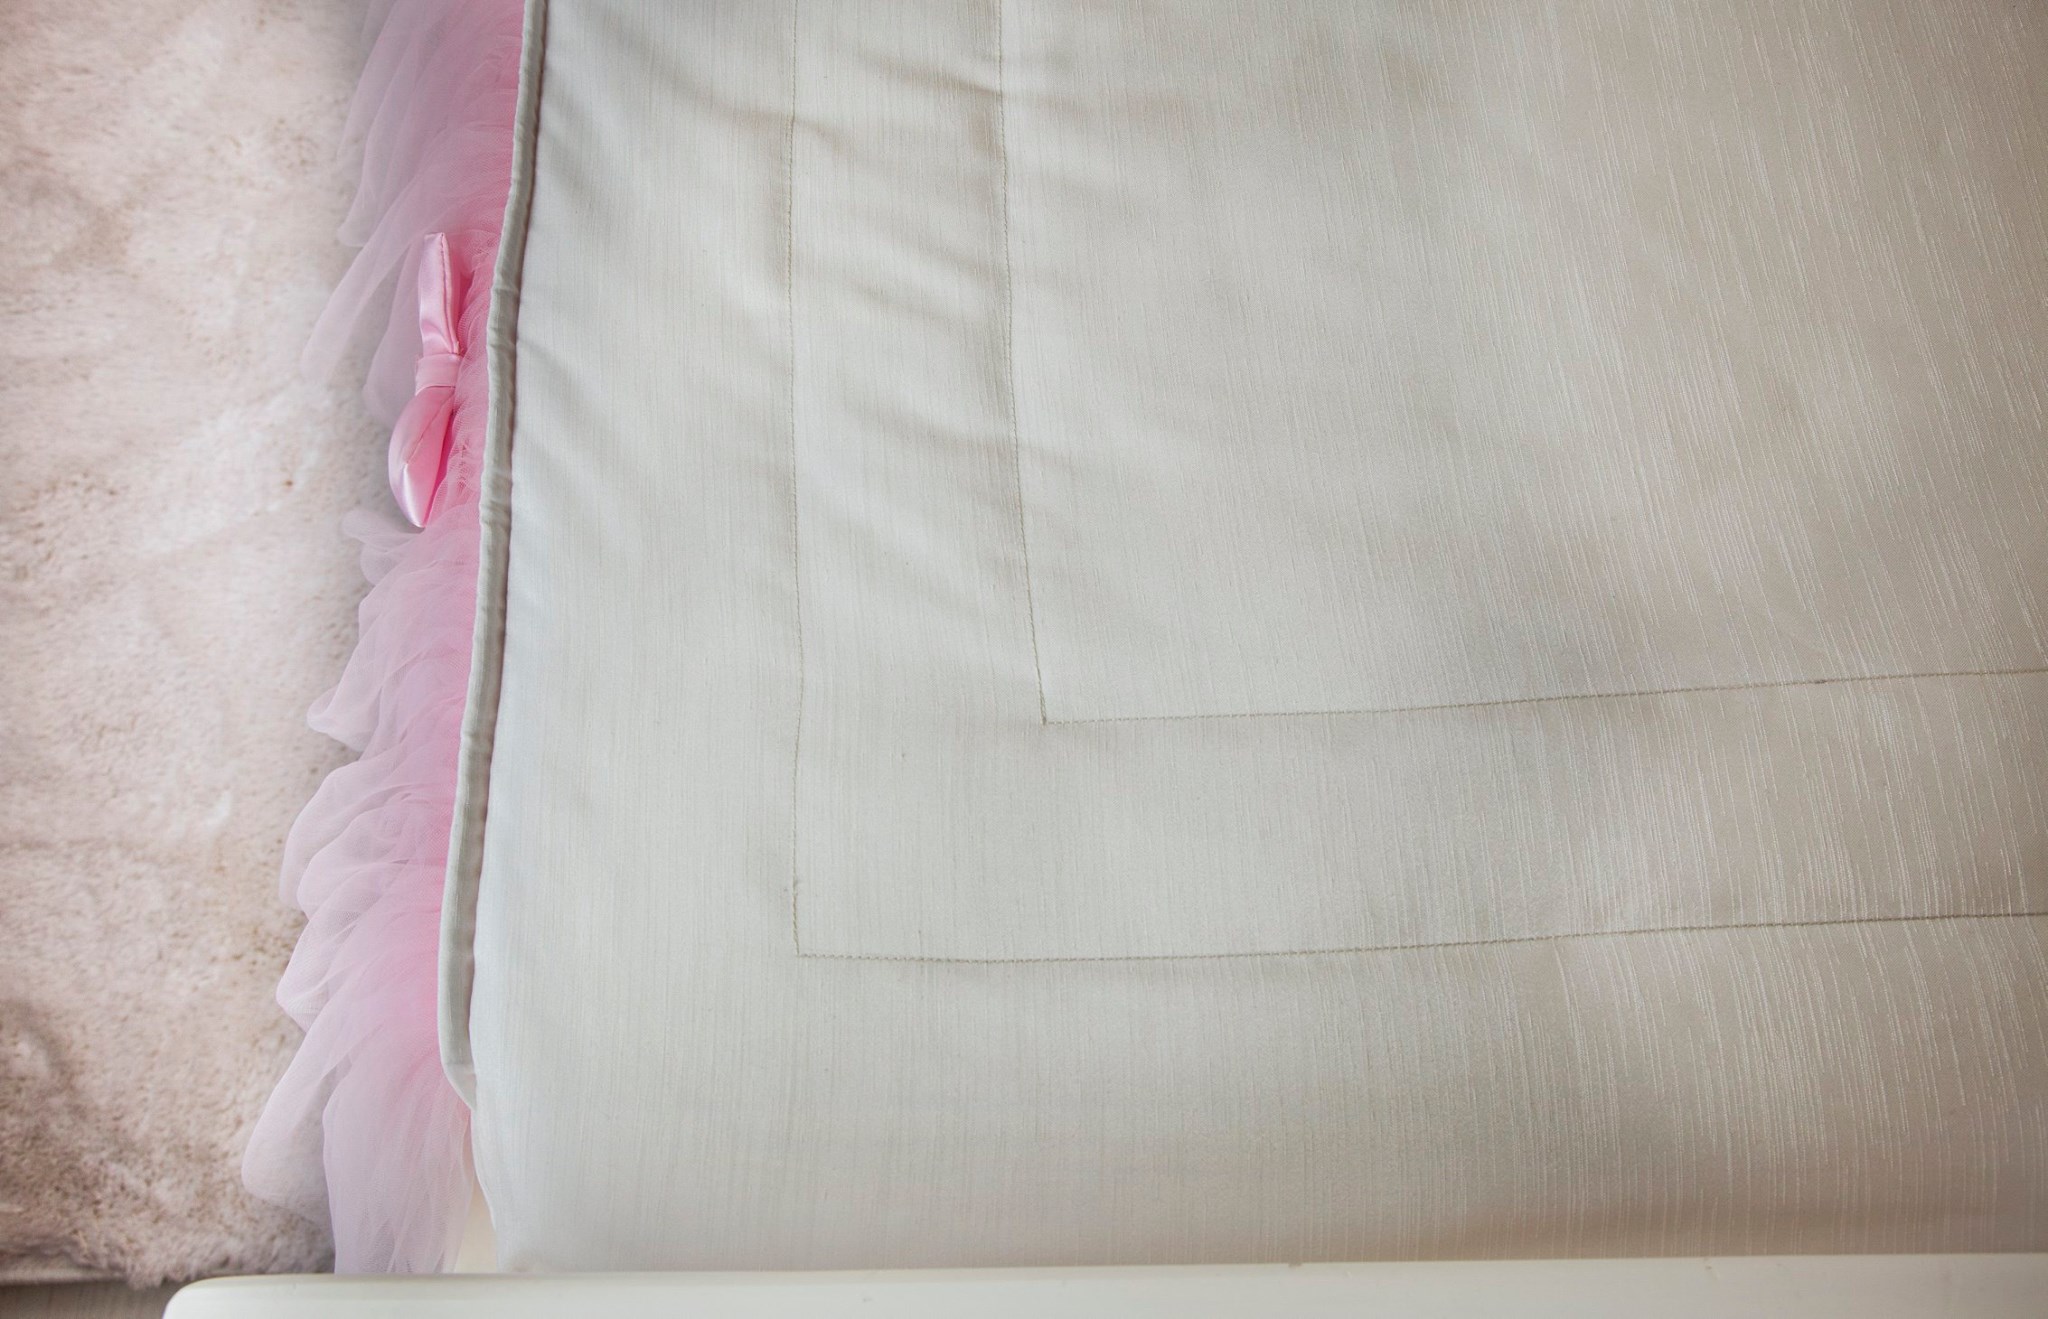 כיסוי המיטה עשוי בד סאטן עבה עם פסים לאורך בהברקה עדינה ומתחתיו מילוי אקרילן.